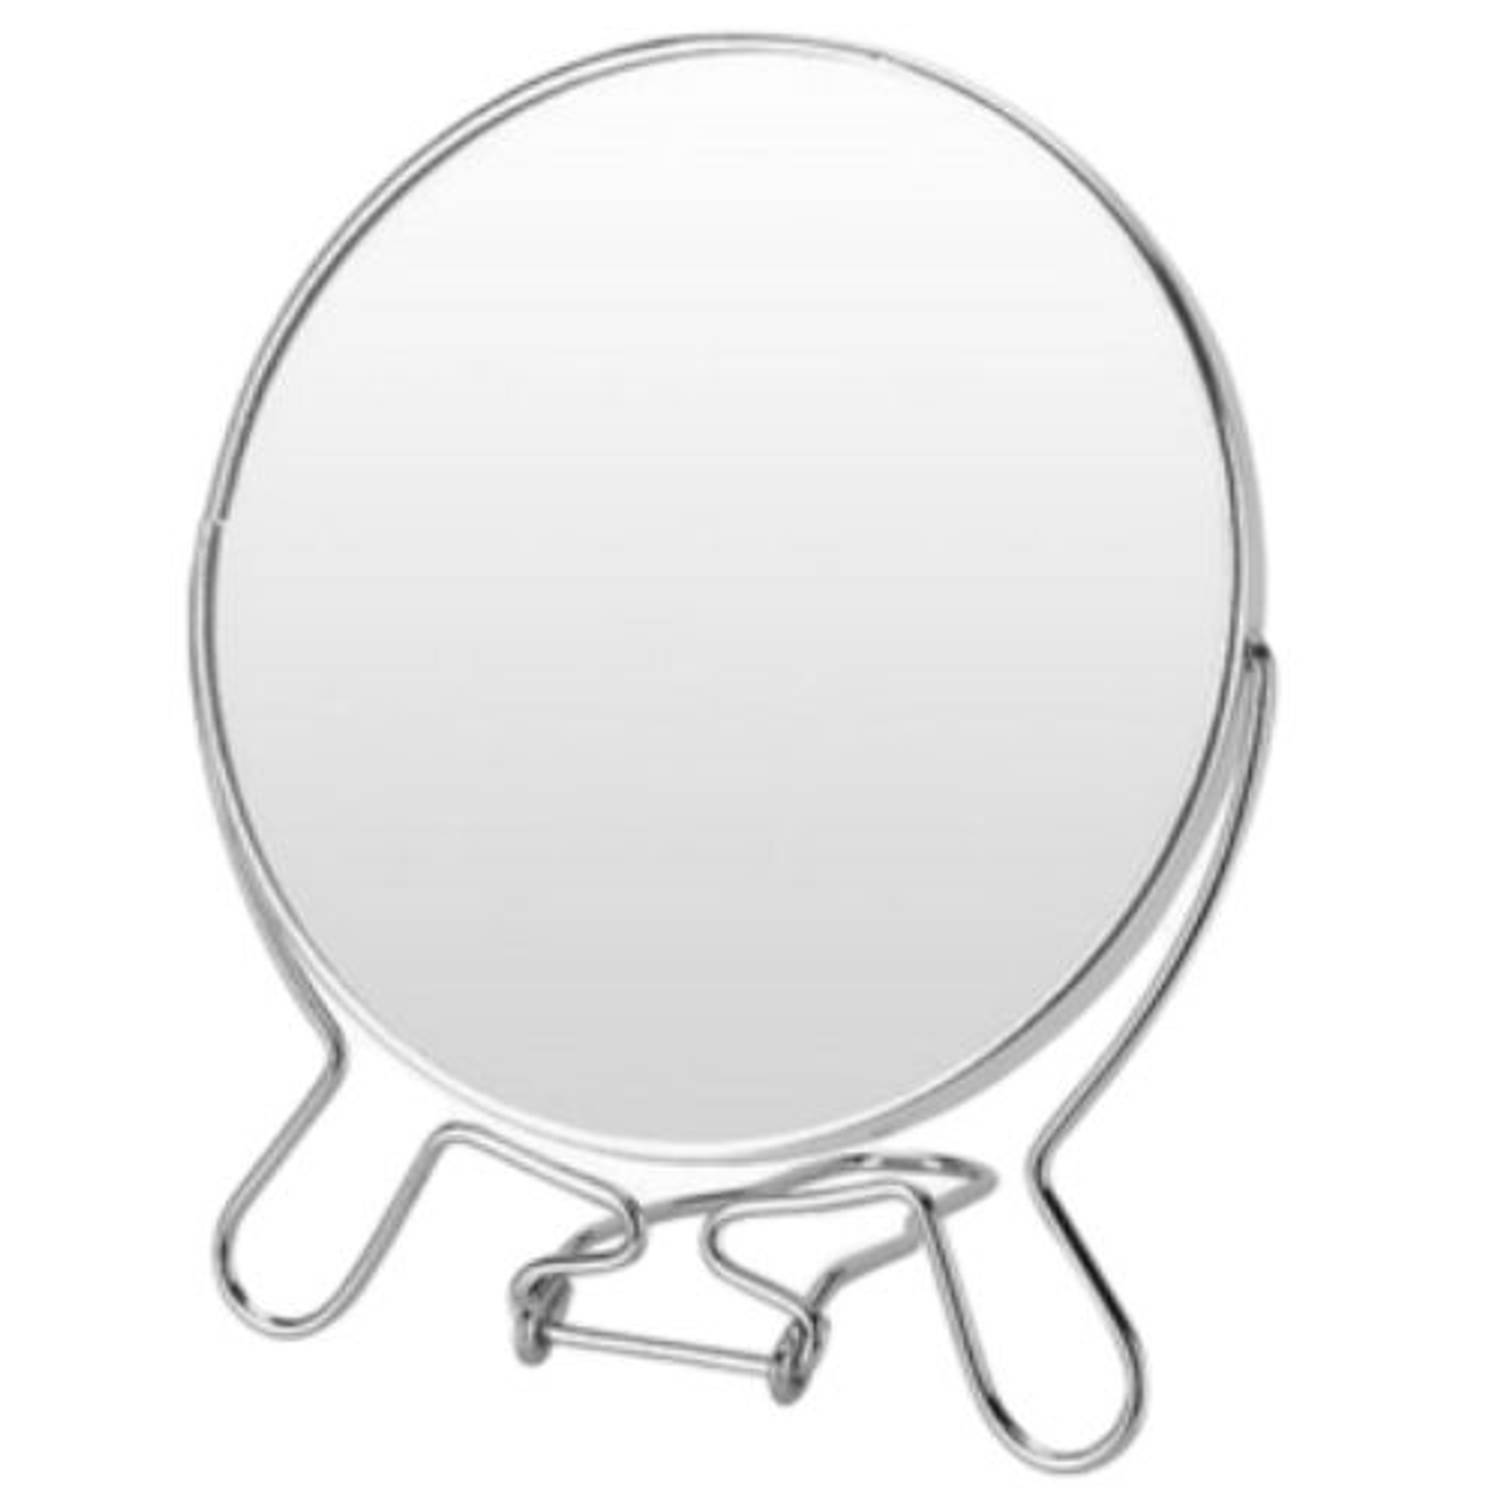 Bliksem Pa Tegen de wil Orange85 Make-up spiegel - Tafel - Staand - 2x vergroting - Scheerspiegel -  Cosmetica - Draagbaar - Metaal | Blokker